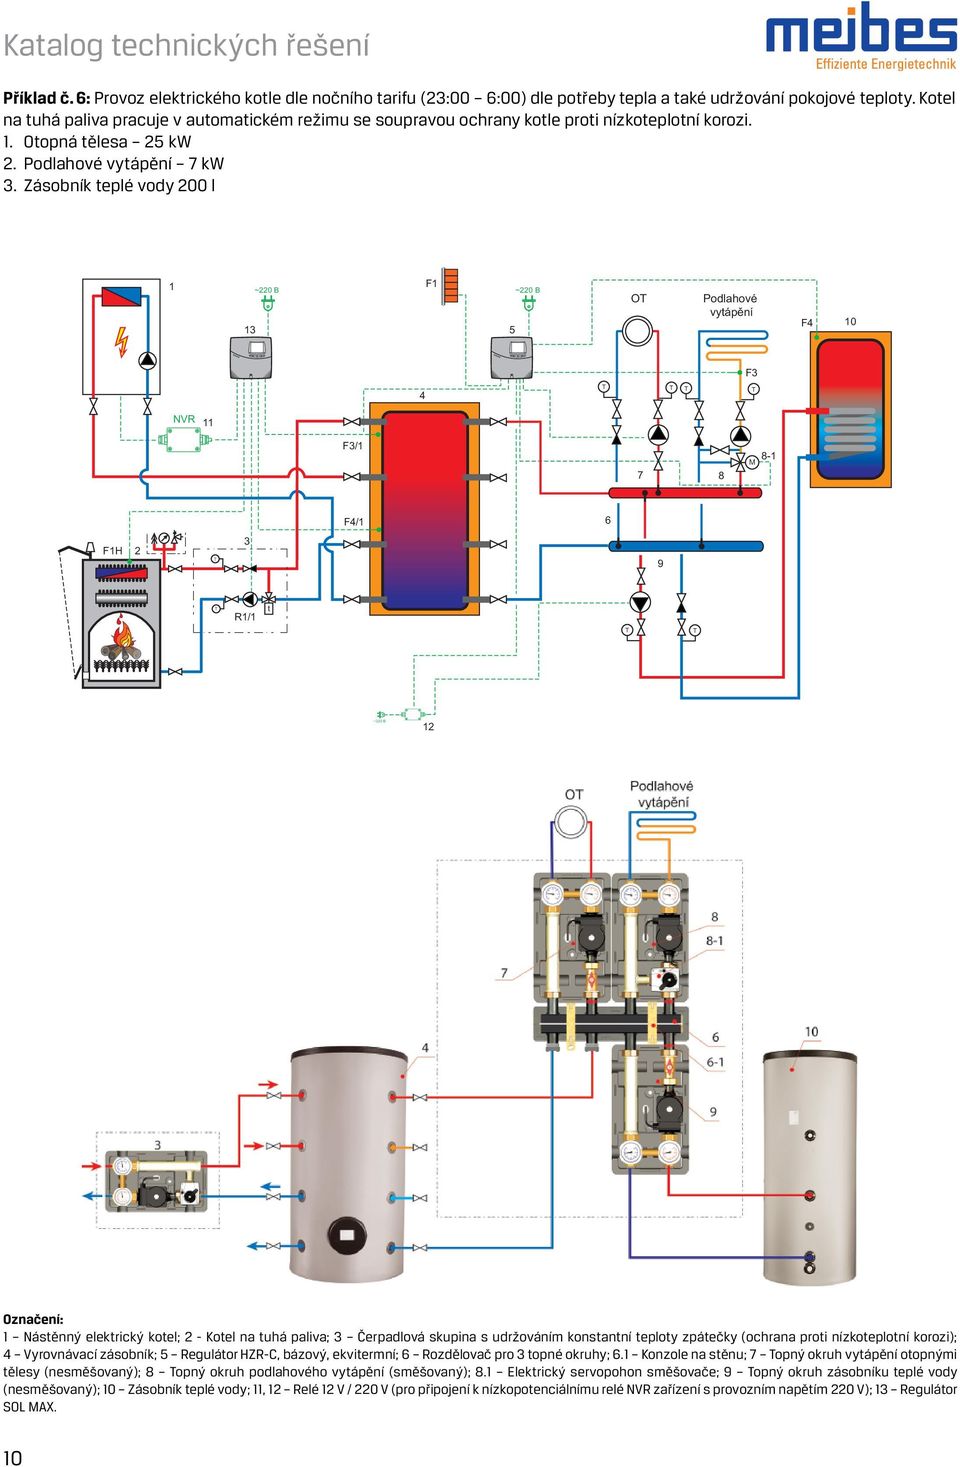 Zásobník teplé vody 00 l 1 1 ~0 В F1 ~0 В O Podlahové vytápění F4 10 F 4 NVR 11 F/1 7 8 8-1 F4/1 6 F1H 9 R1/1 t ~0 В 1 1 Nástěnný elektrický kotel; - Kotel na tuhá paliva; Čerpadlová skupina s